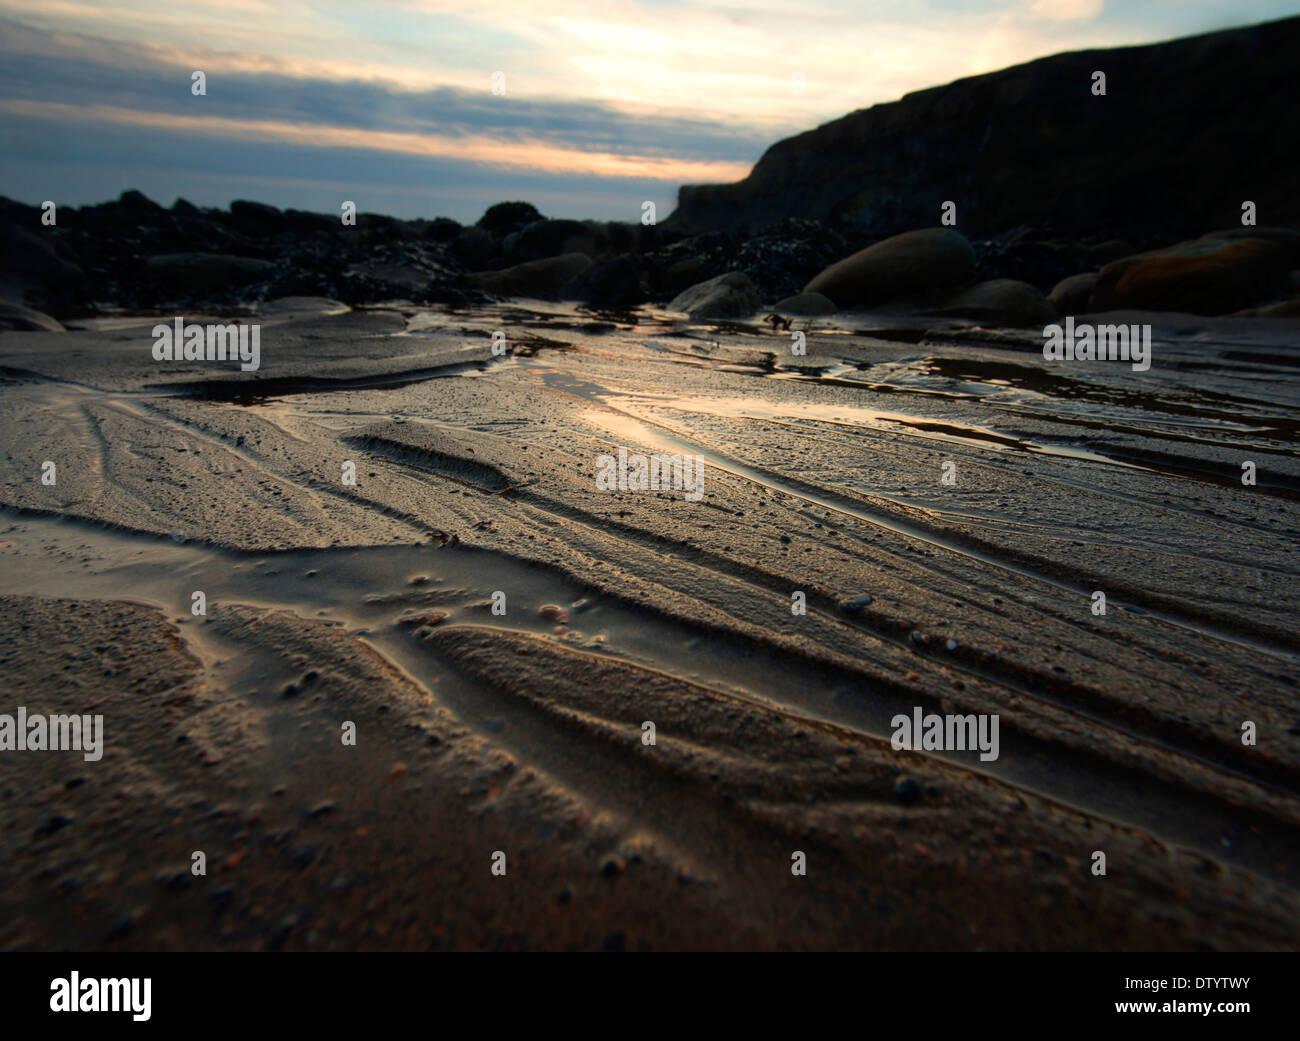 Des motifs lumineux dans le sable à Saltwick Bay Whitby, North Yorkshire Angleterre UK Banque D'Images